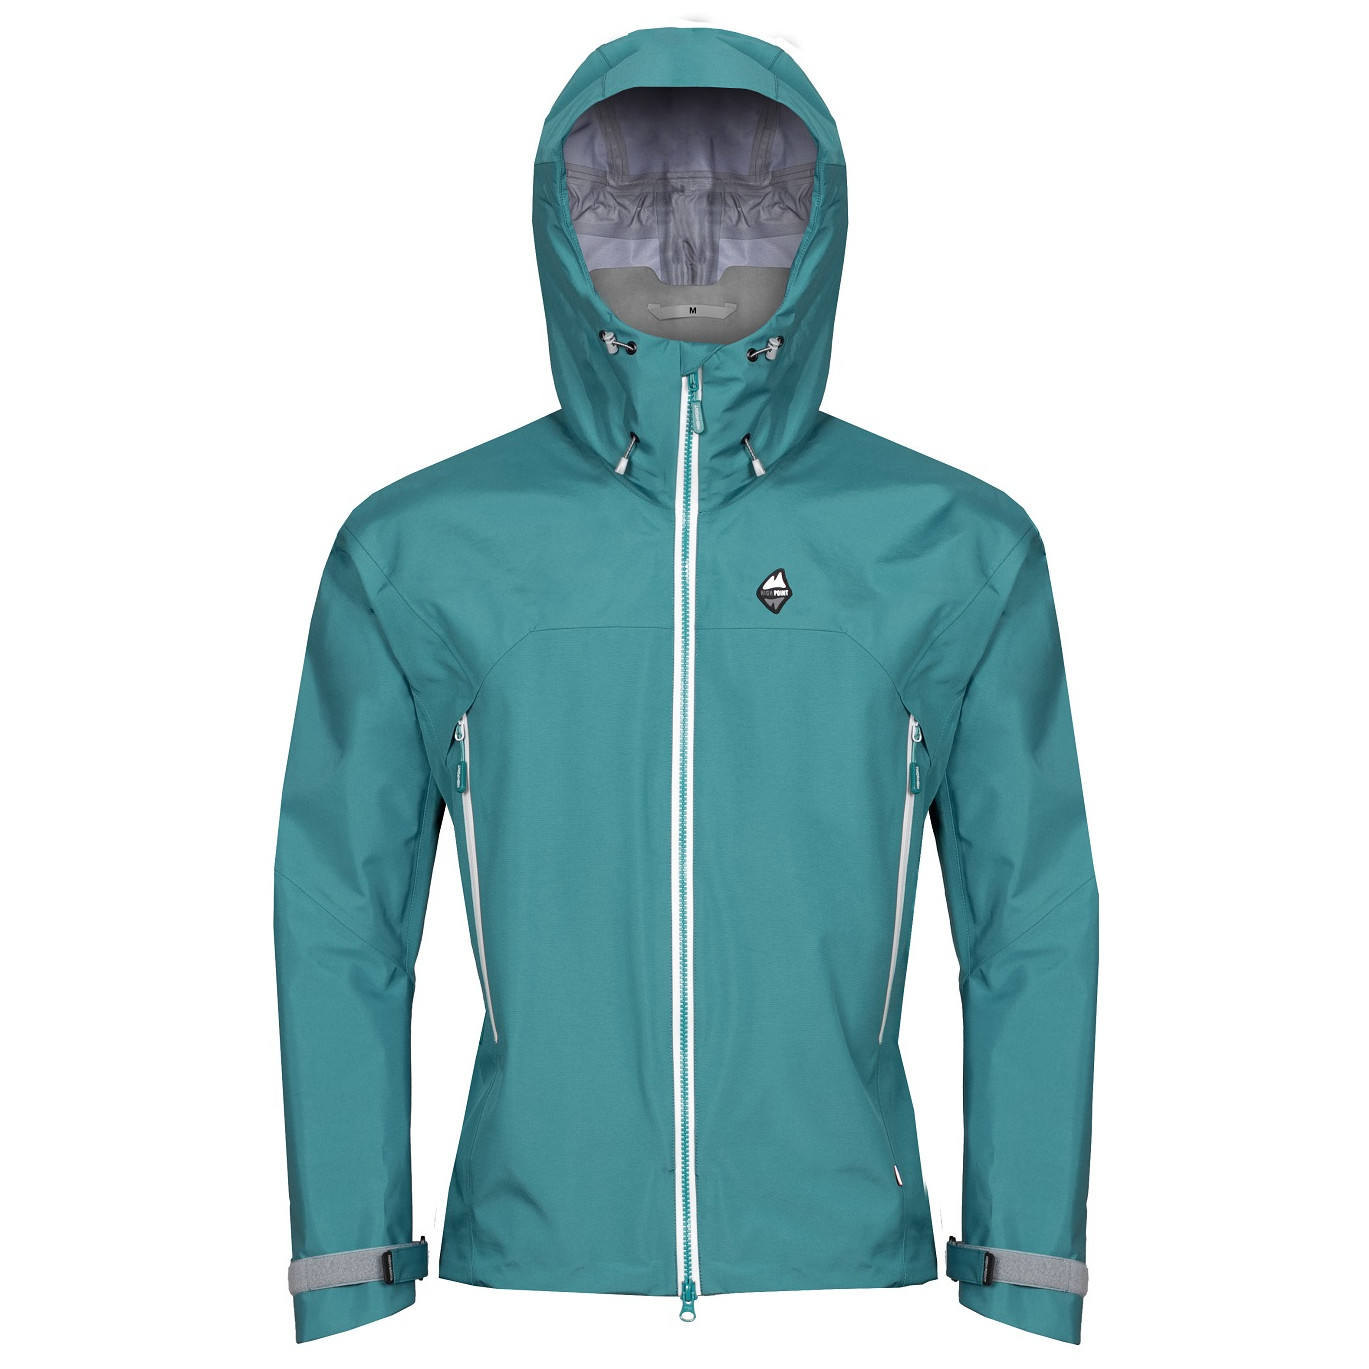 Pánská bunda High Point Protector 7.0 Jacket Velikost: L / Barva: modrá/zelená